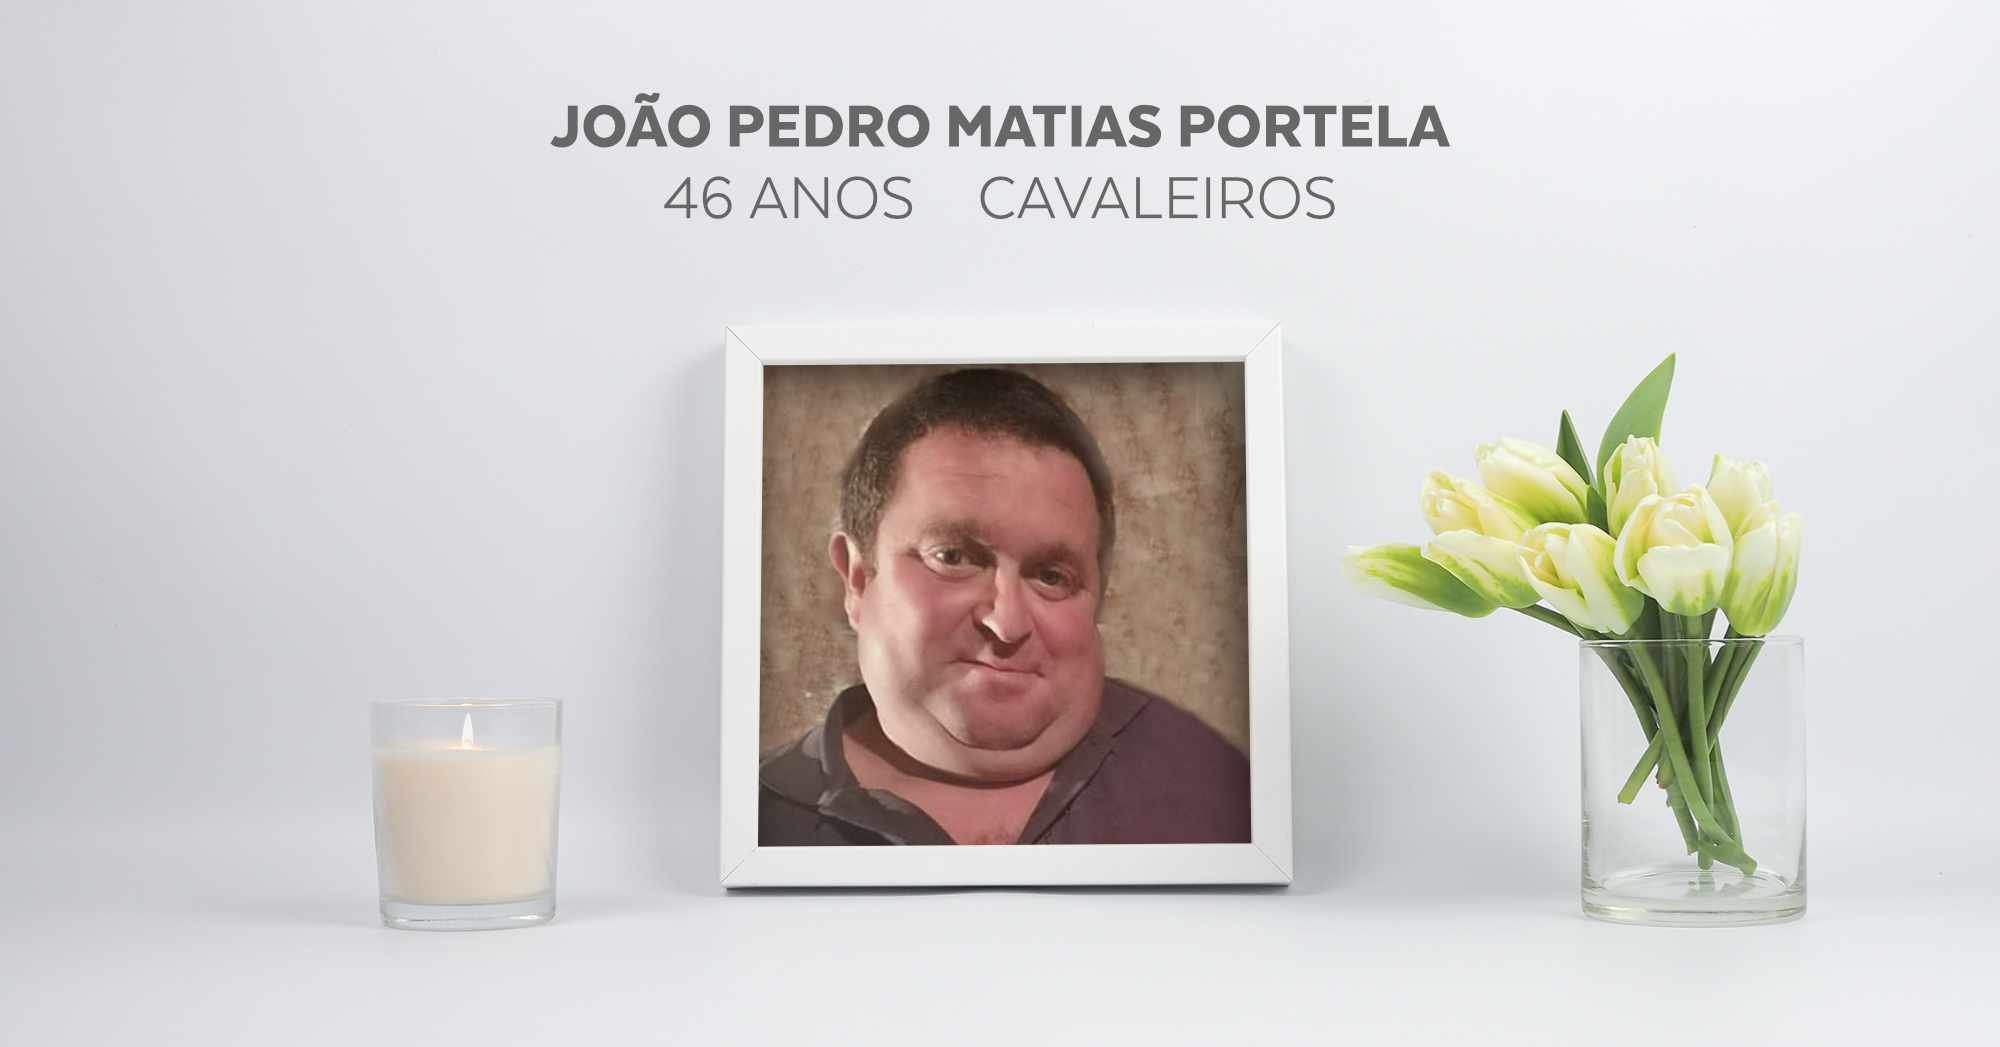 João Pedro Matias Portela